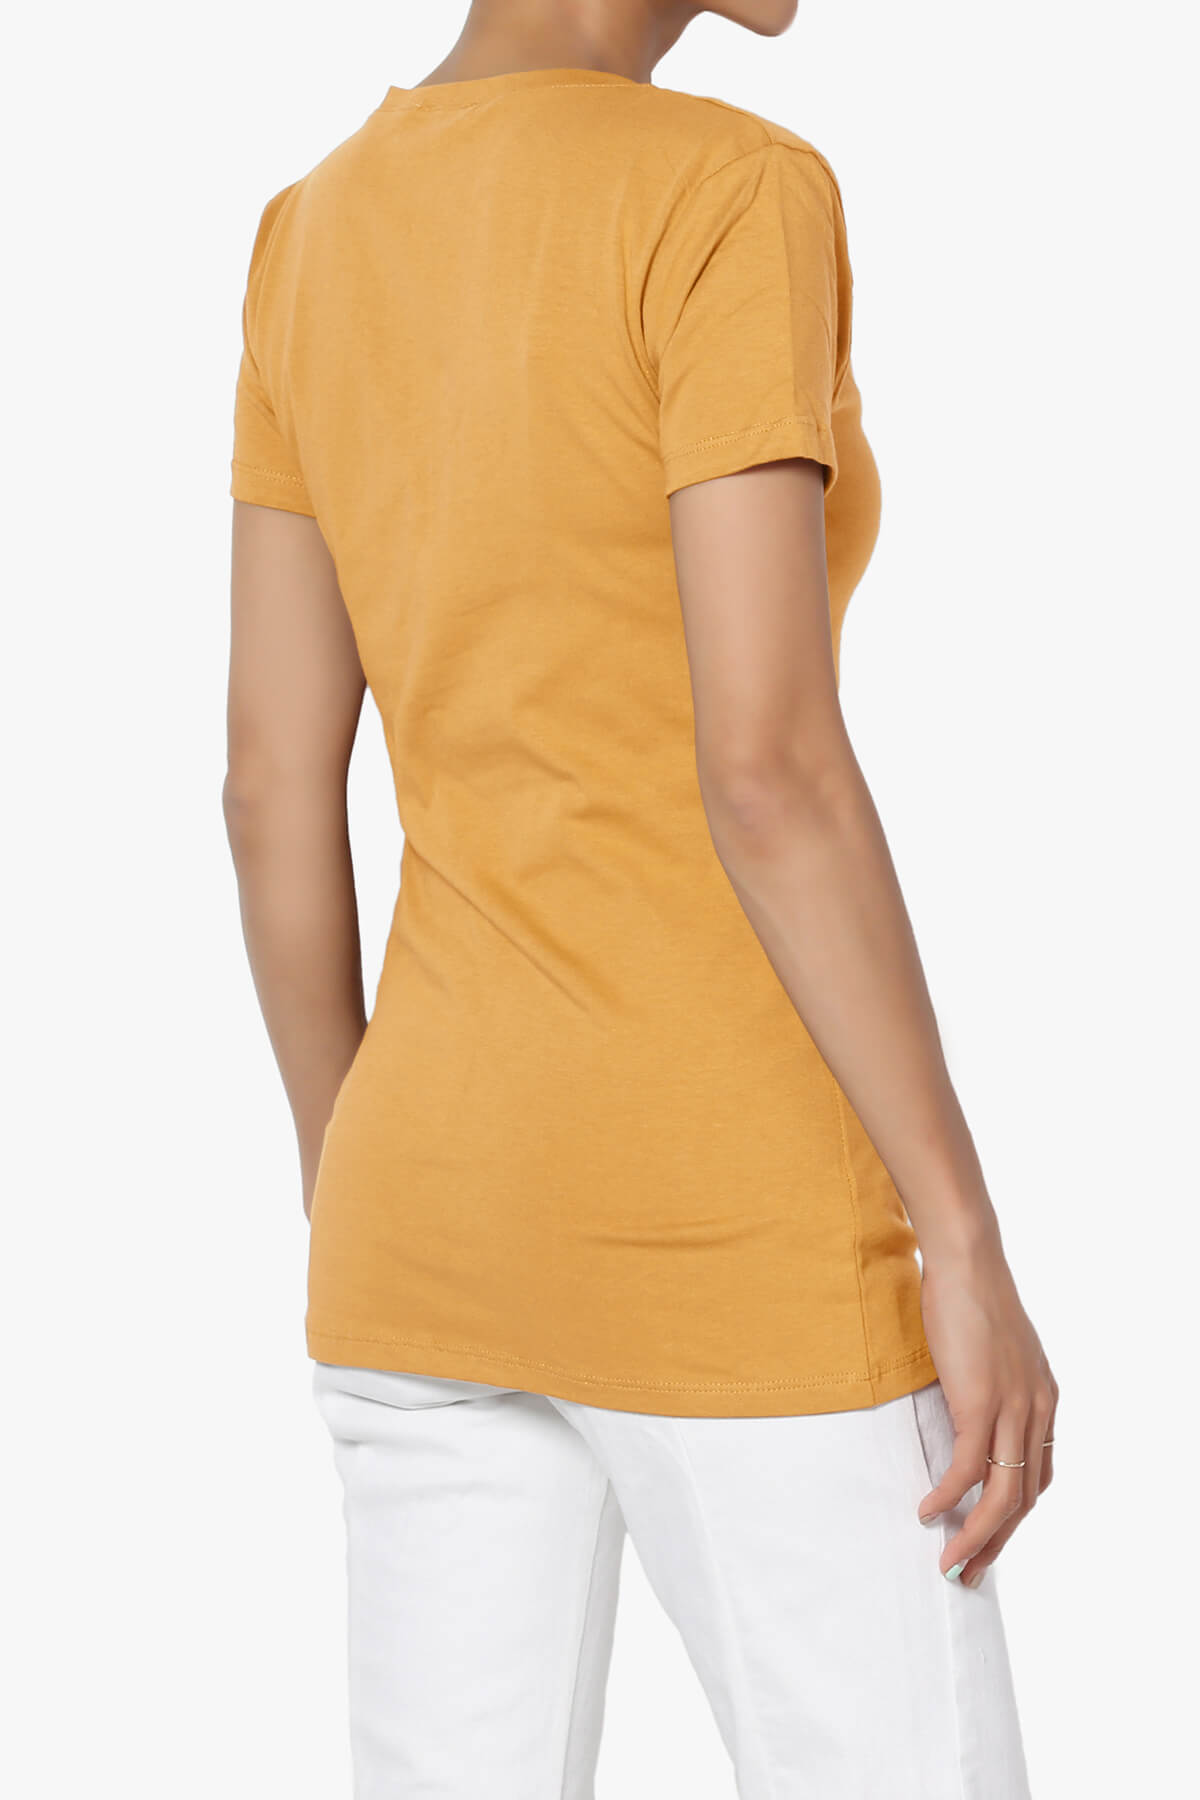 Candela V-Neck Short Sleeve T-Shirts GOLDEN MUSTARD_4